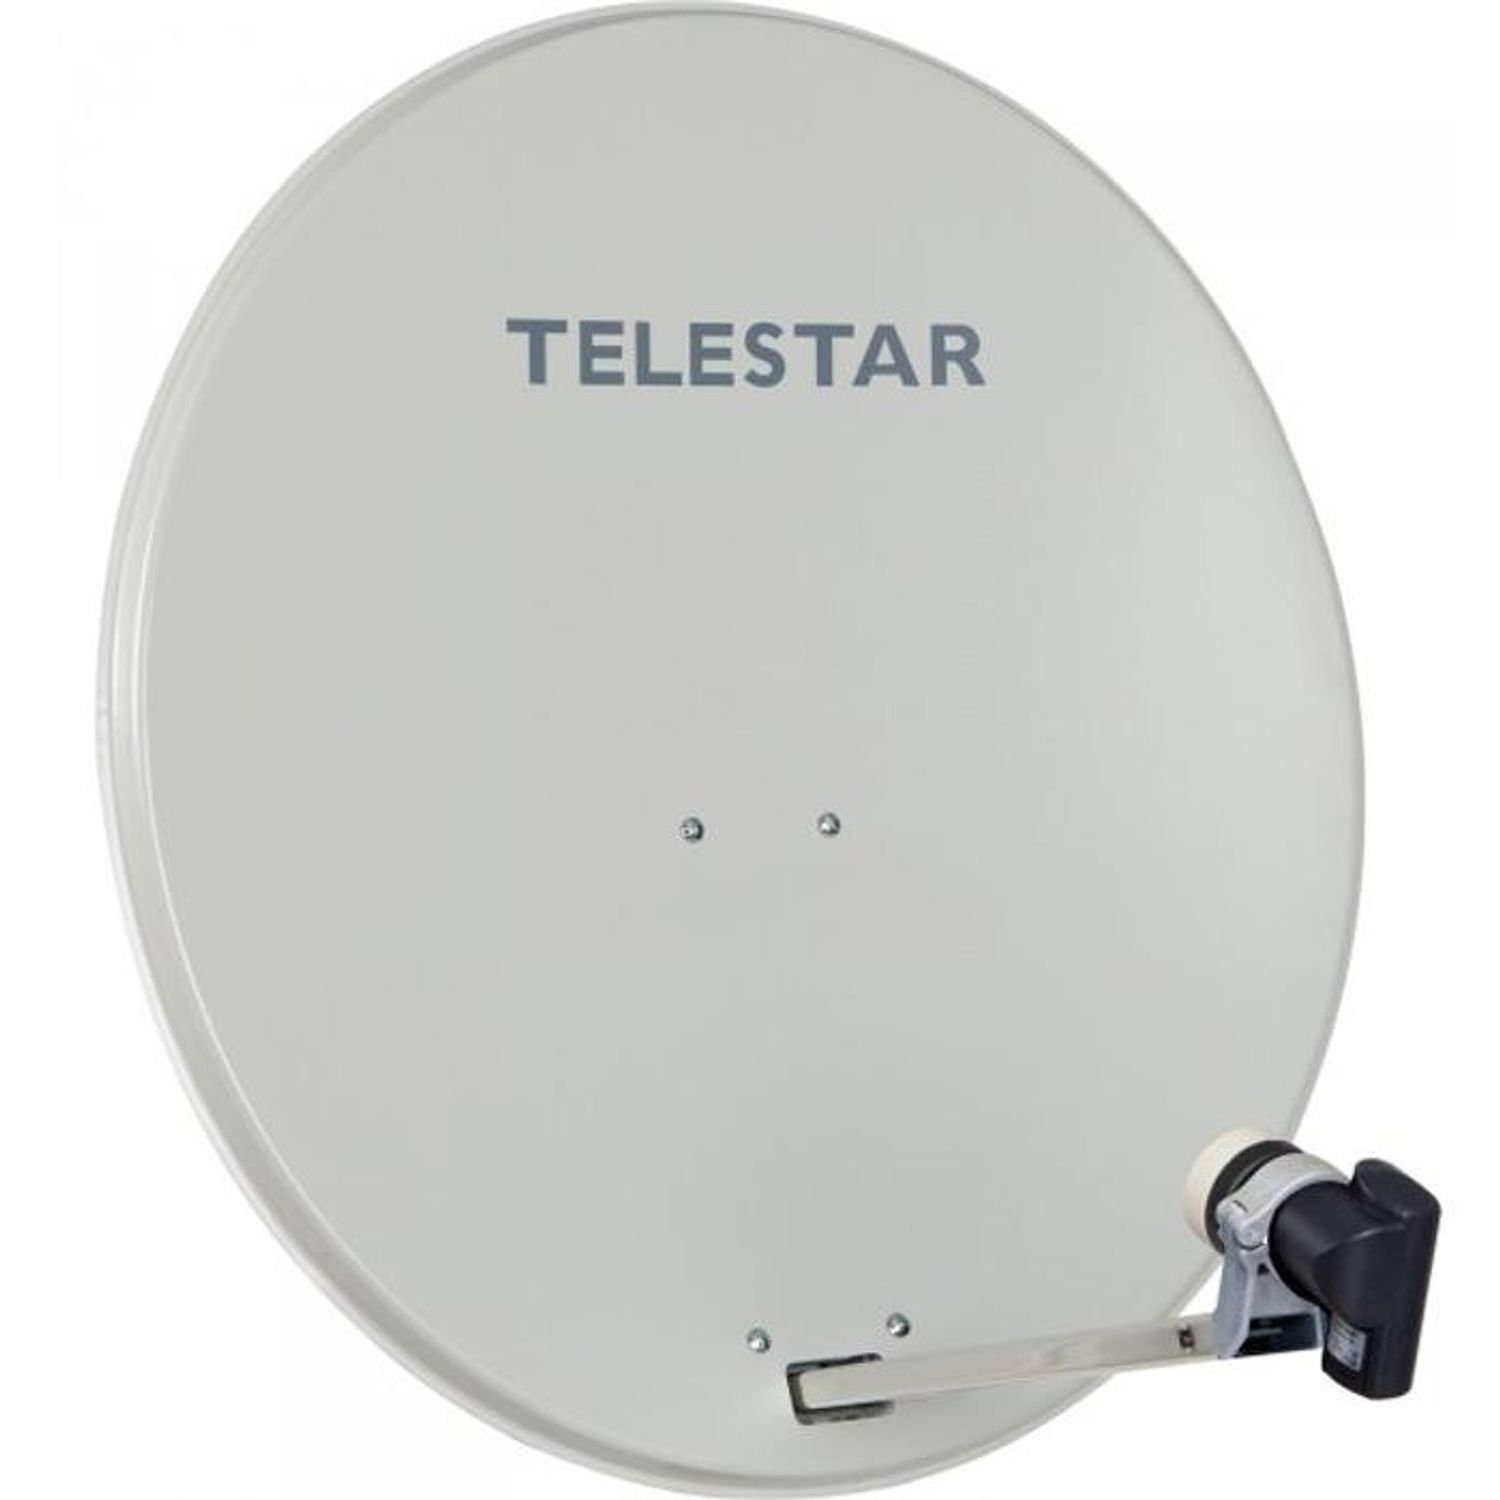 TELESTAR DIGIRAPID 80 A Alu Sat-Antenne mit SKYSINGLE HC LNB SAT-Antenne (80 cm, Aluminium, Guss, besonders rauscharm, empfangsorientiert, HDTv & 3D geeignet)